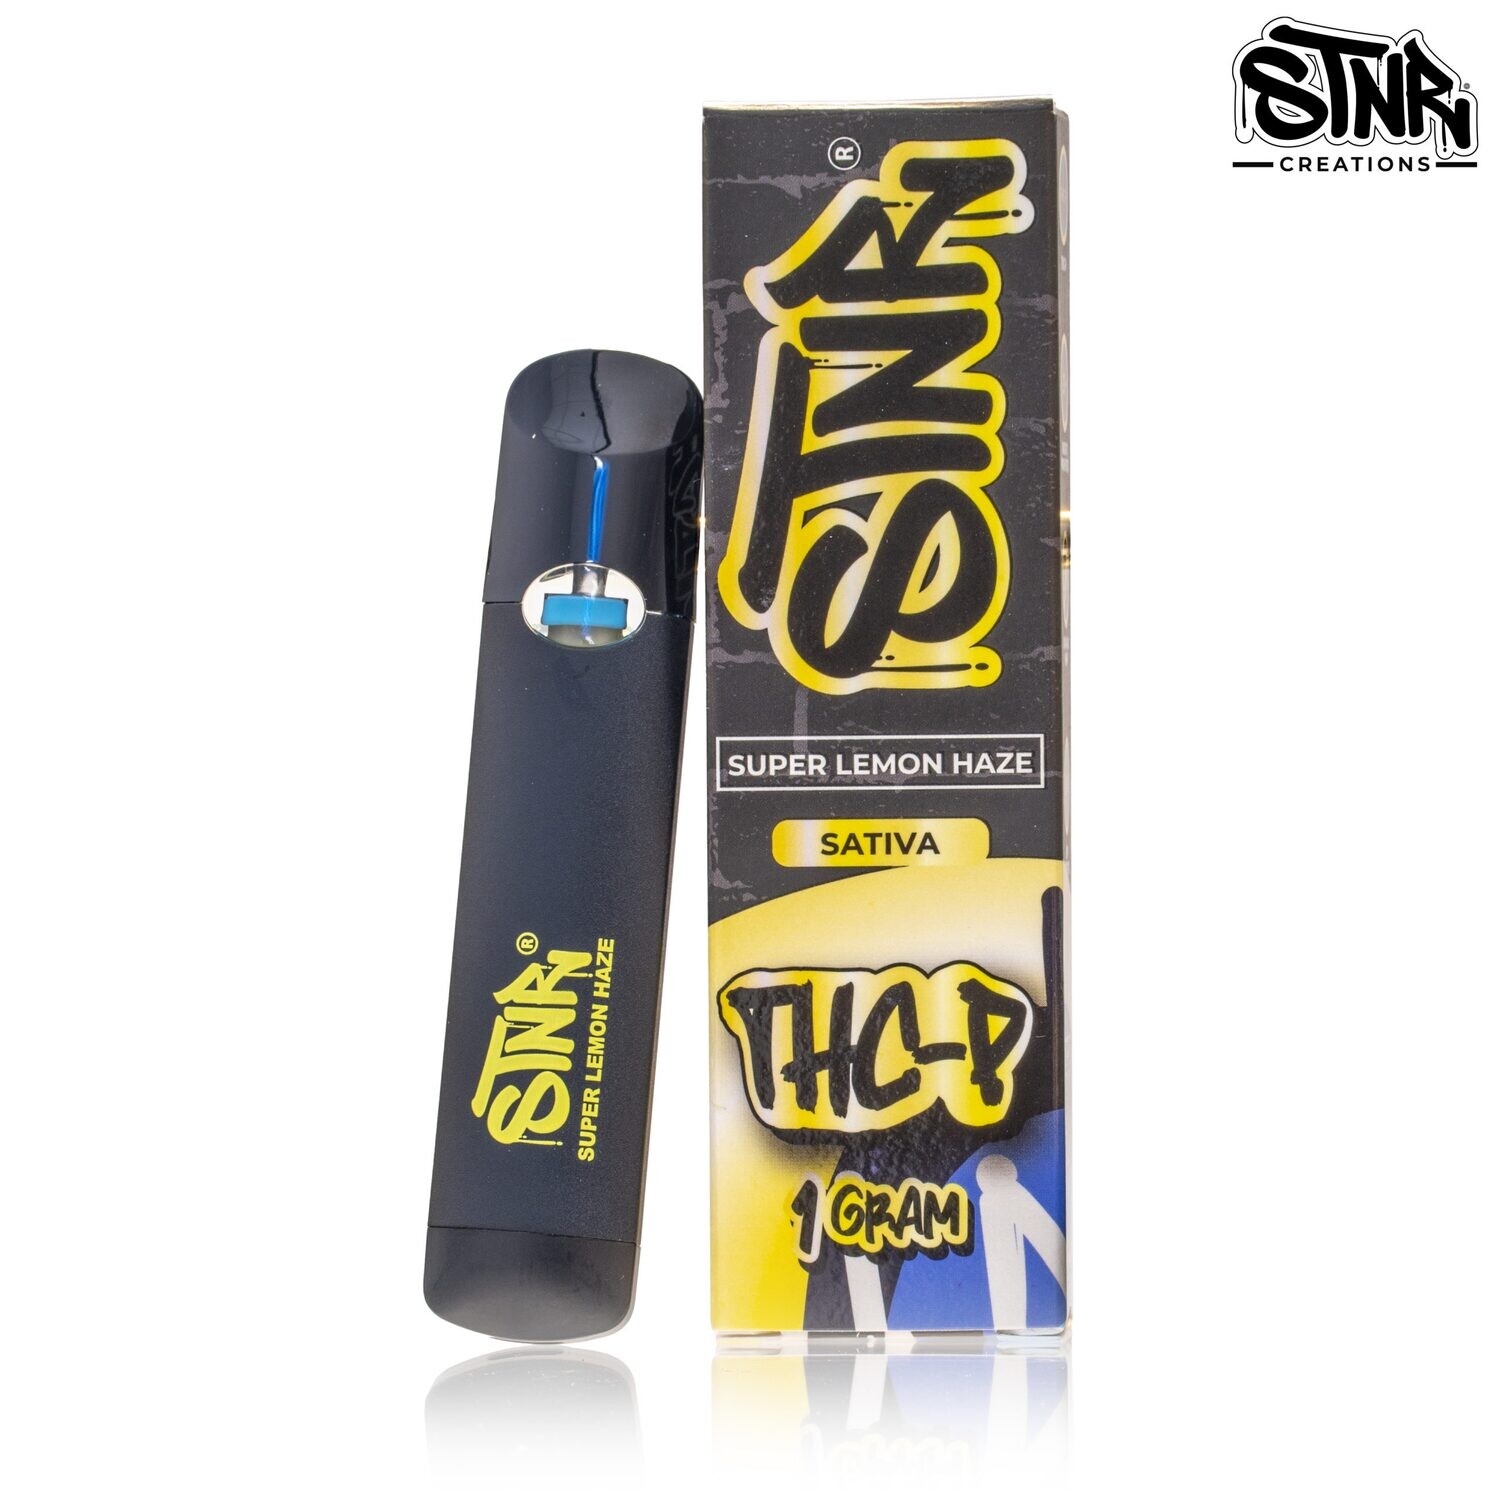 DISP - STNR THC-P Super Lemon Haze 1g